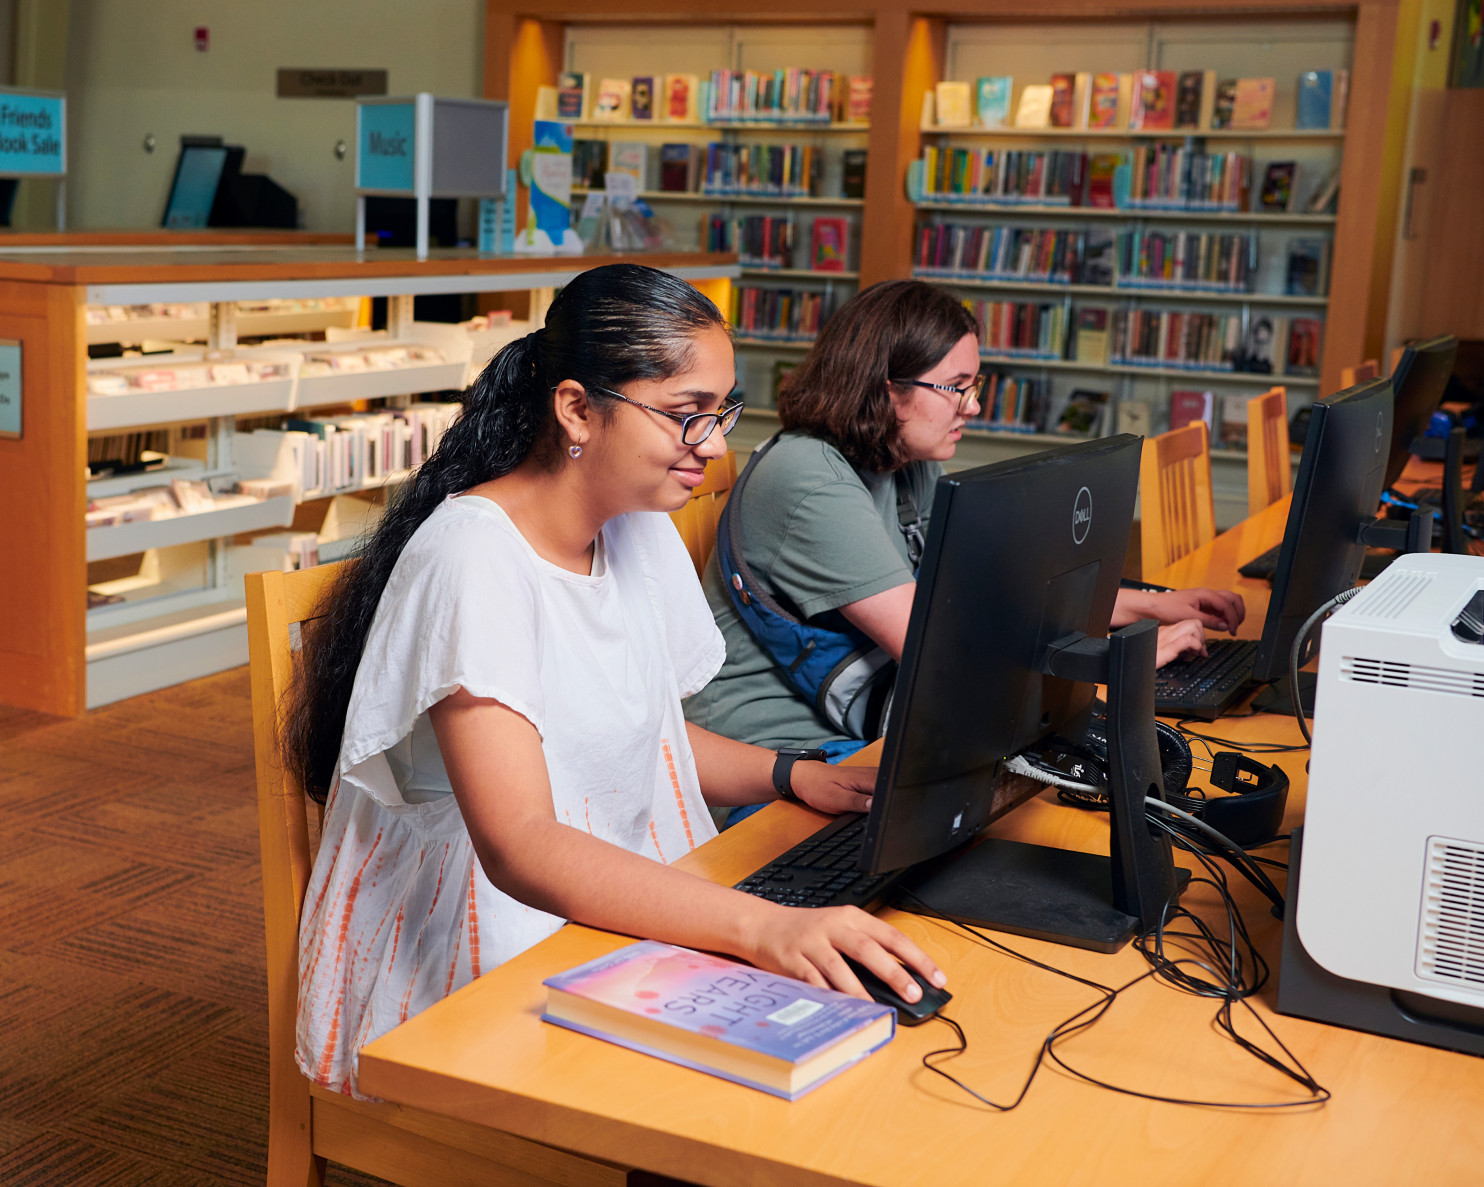 clientes jóvenes que utilizan estaciones de computación en la biblioteca